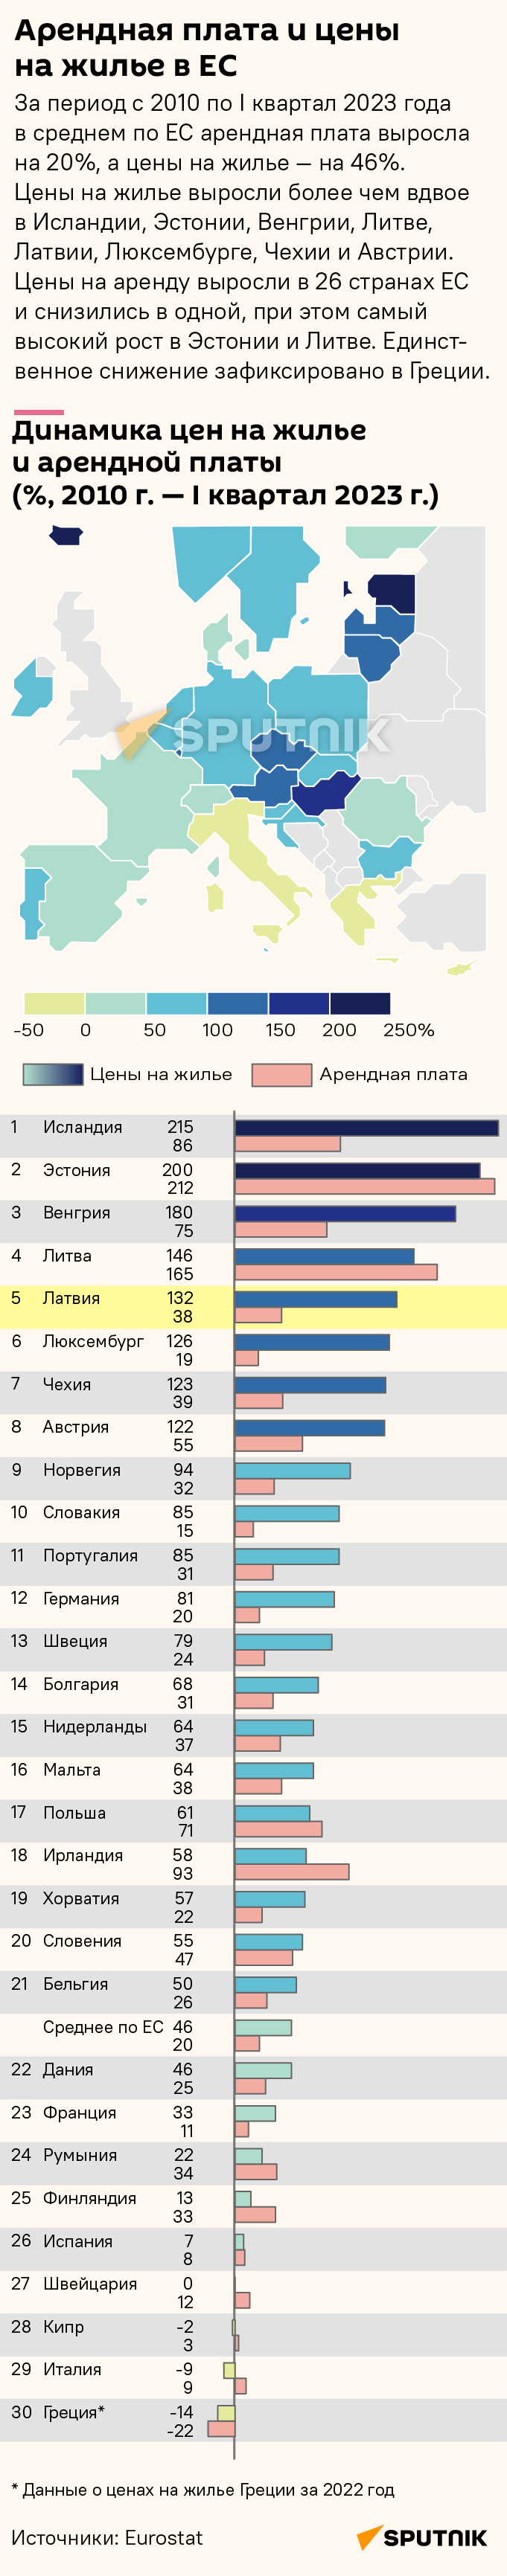 Динамика цен на жилье и арендной платы, 2010 г. — I квартал 2023 г. - Sputnik Латвия